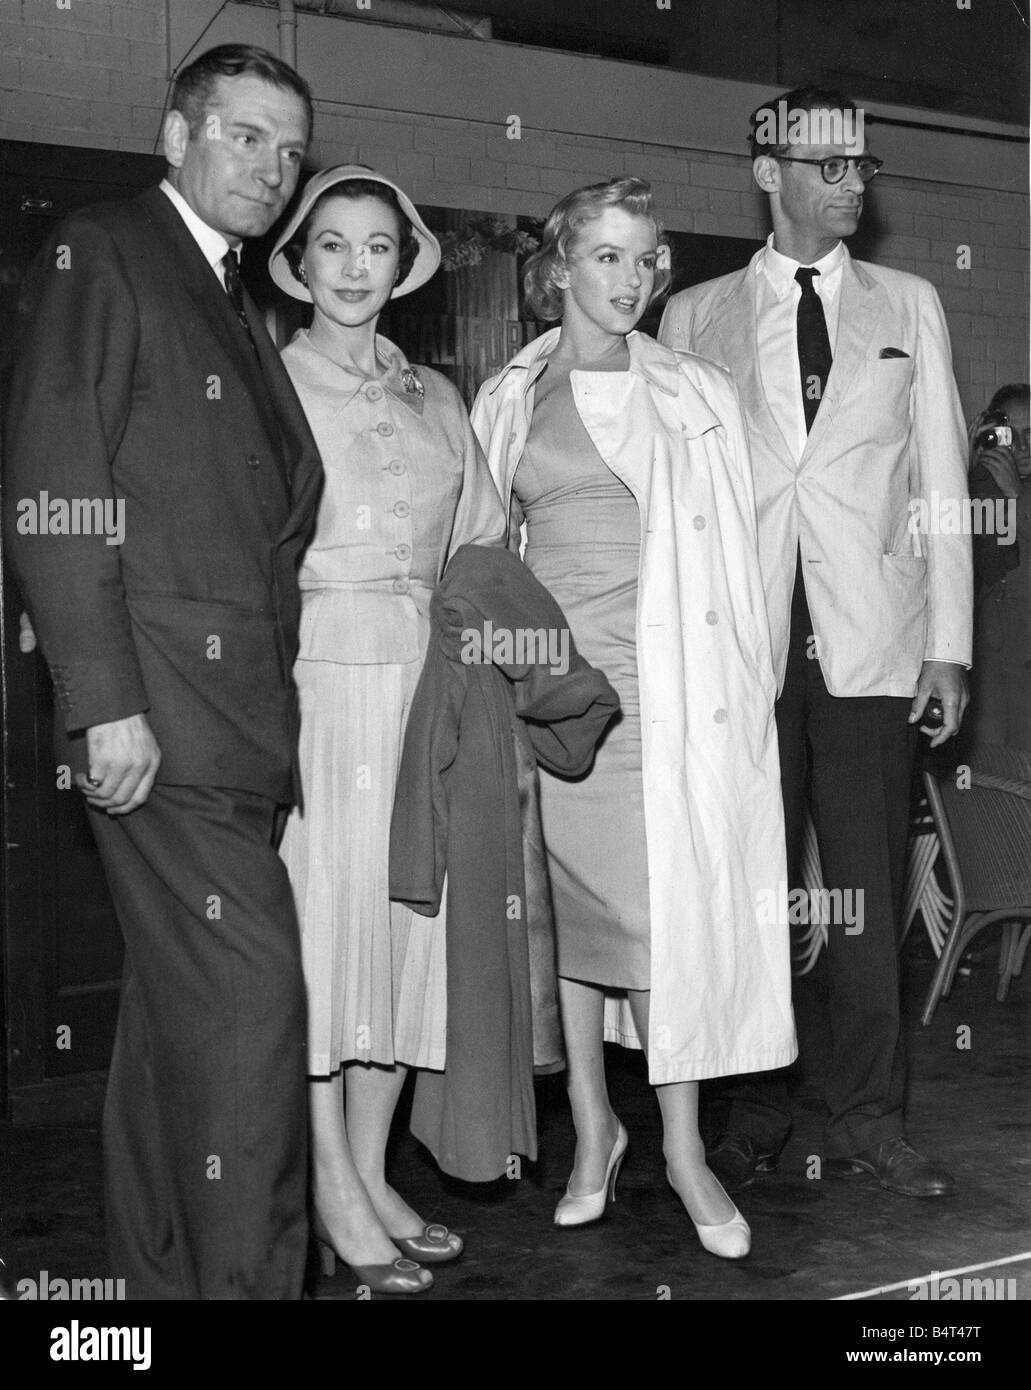 Actrice Marilyn Monroe photographiée avec son mari dramaturge Arthur Miller étant arrivé à l'aéroport de London Sir Laurence Olivier Banque D'Images